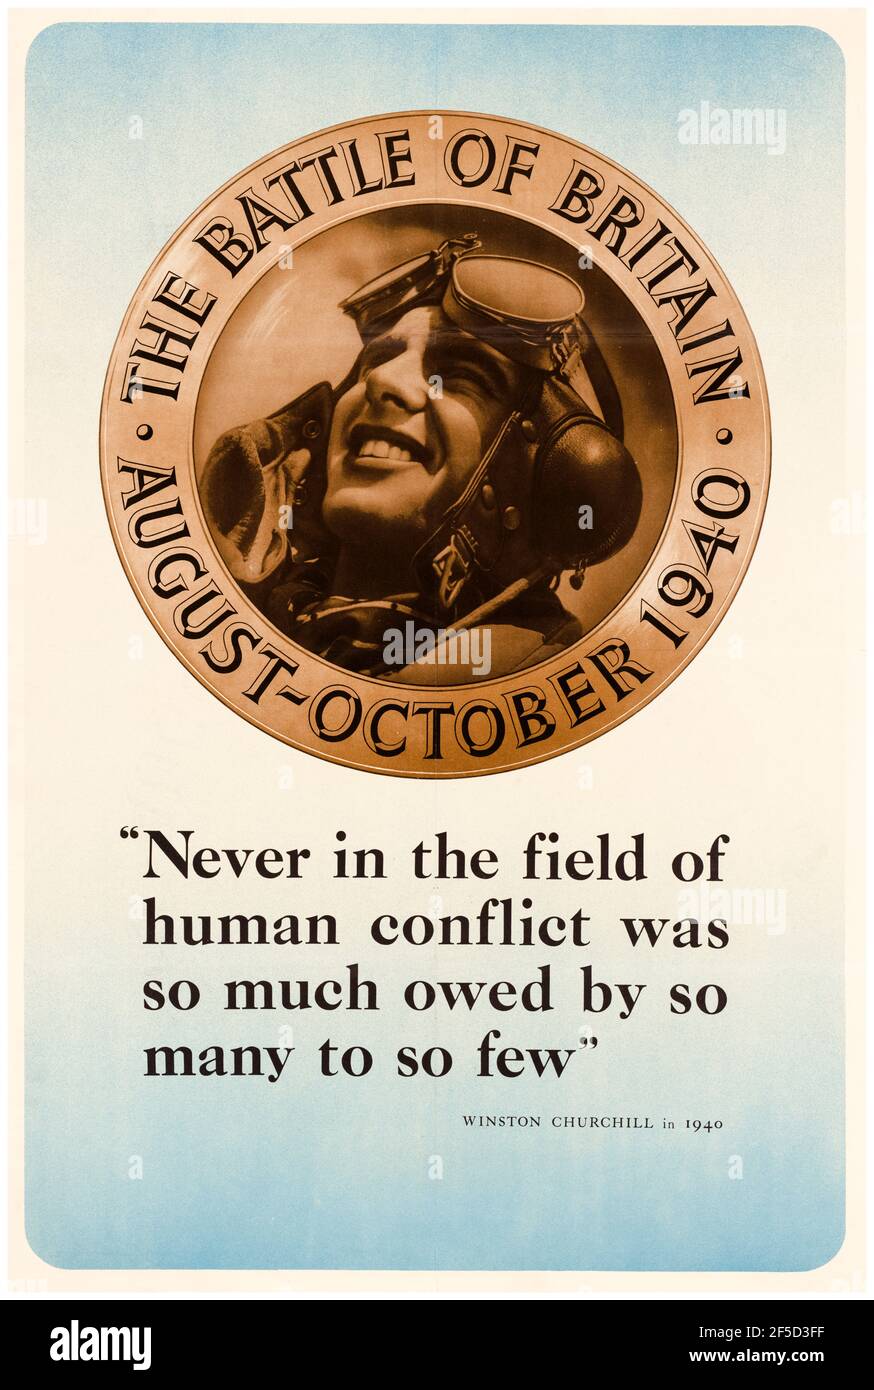 Battle of Britain, Winston Churchill quote, poster motivazionale della seconda guerra mondiale, mai nel campo del conflitto umano, è stato tanto dovuto da tanti, a così pochi, 1942-1945 Foto Stock